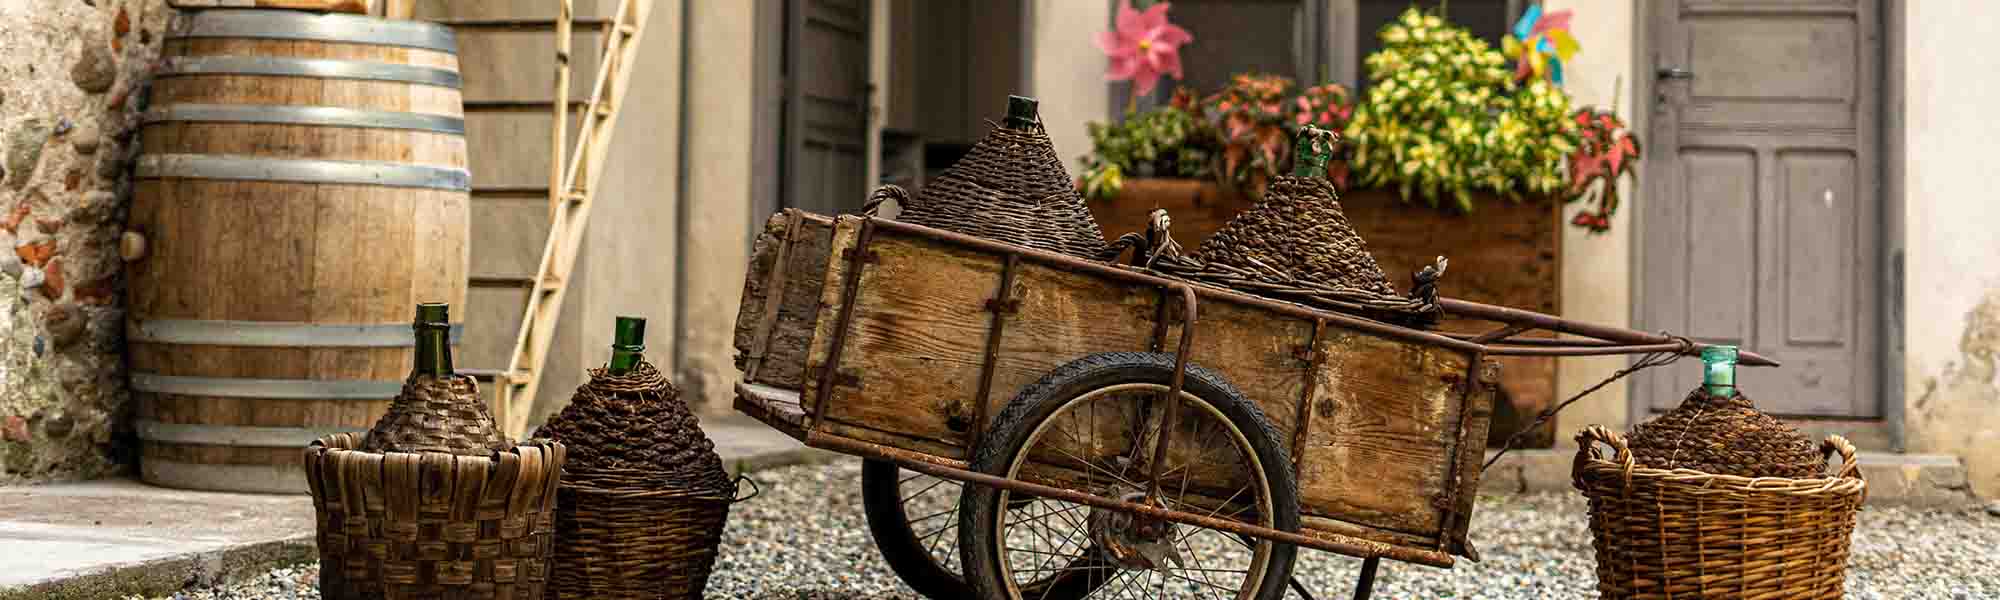 Декоративний візок як місце для зберігання та плетені корзини